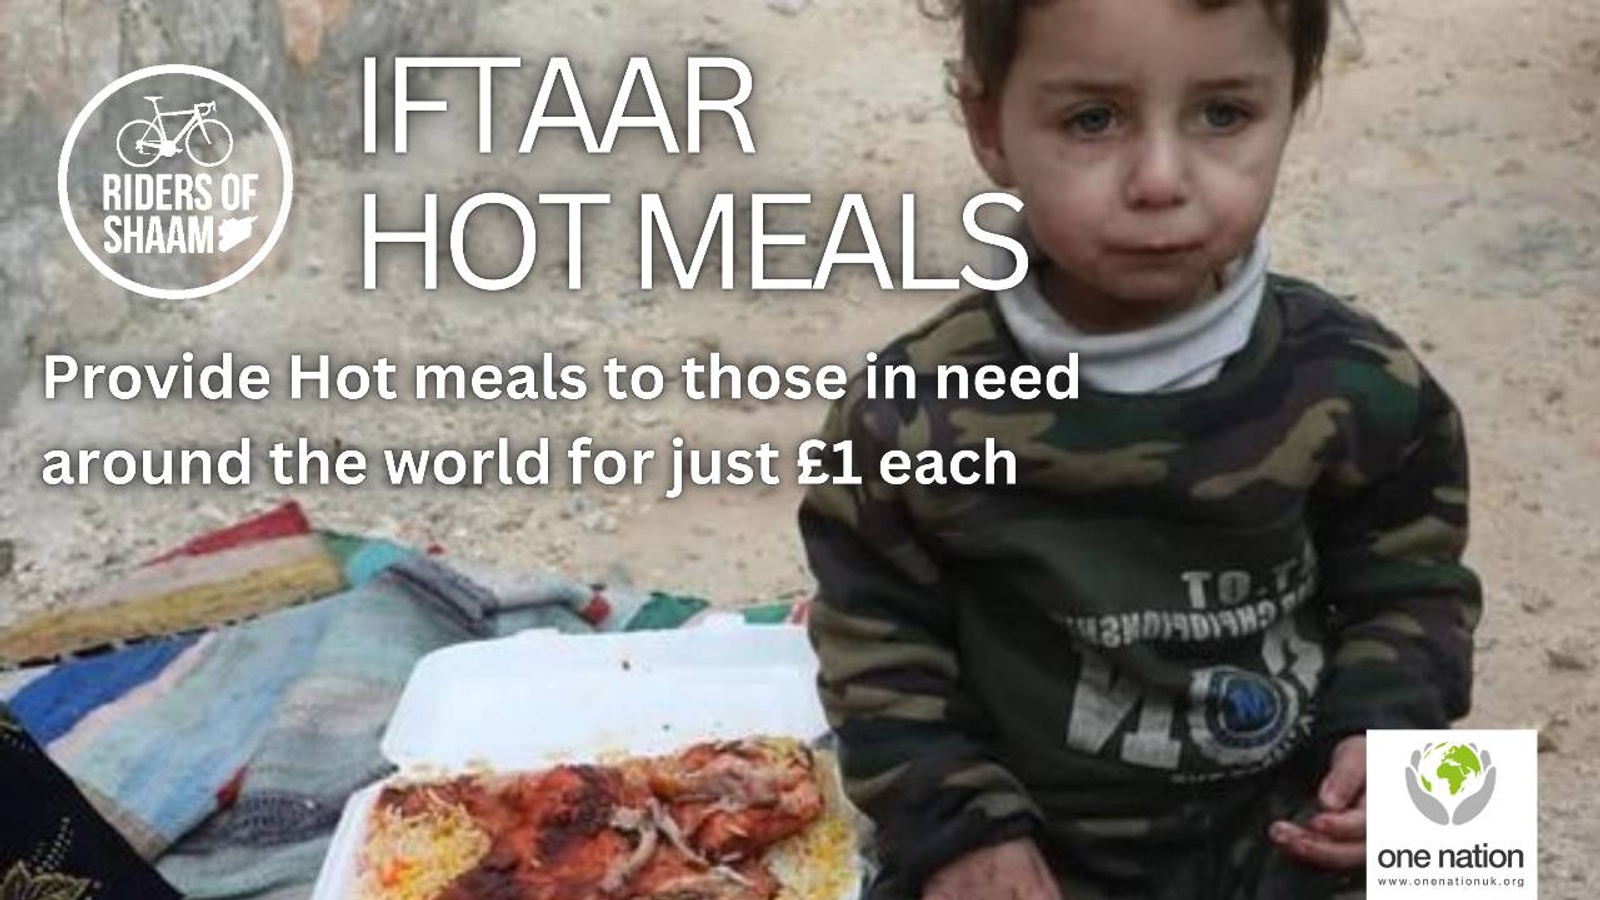 Iftaar Hot Meals Campaign